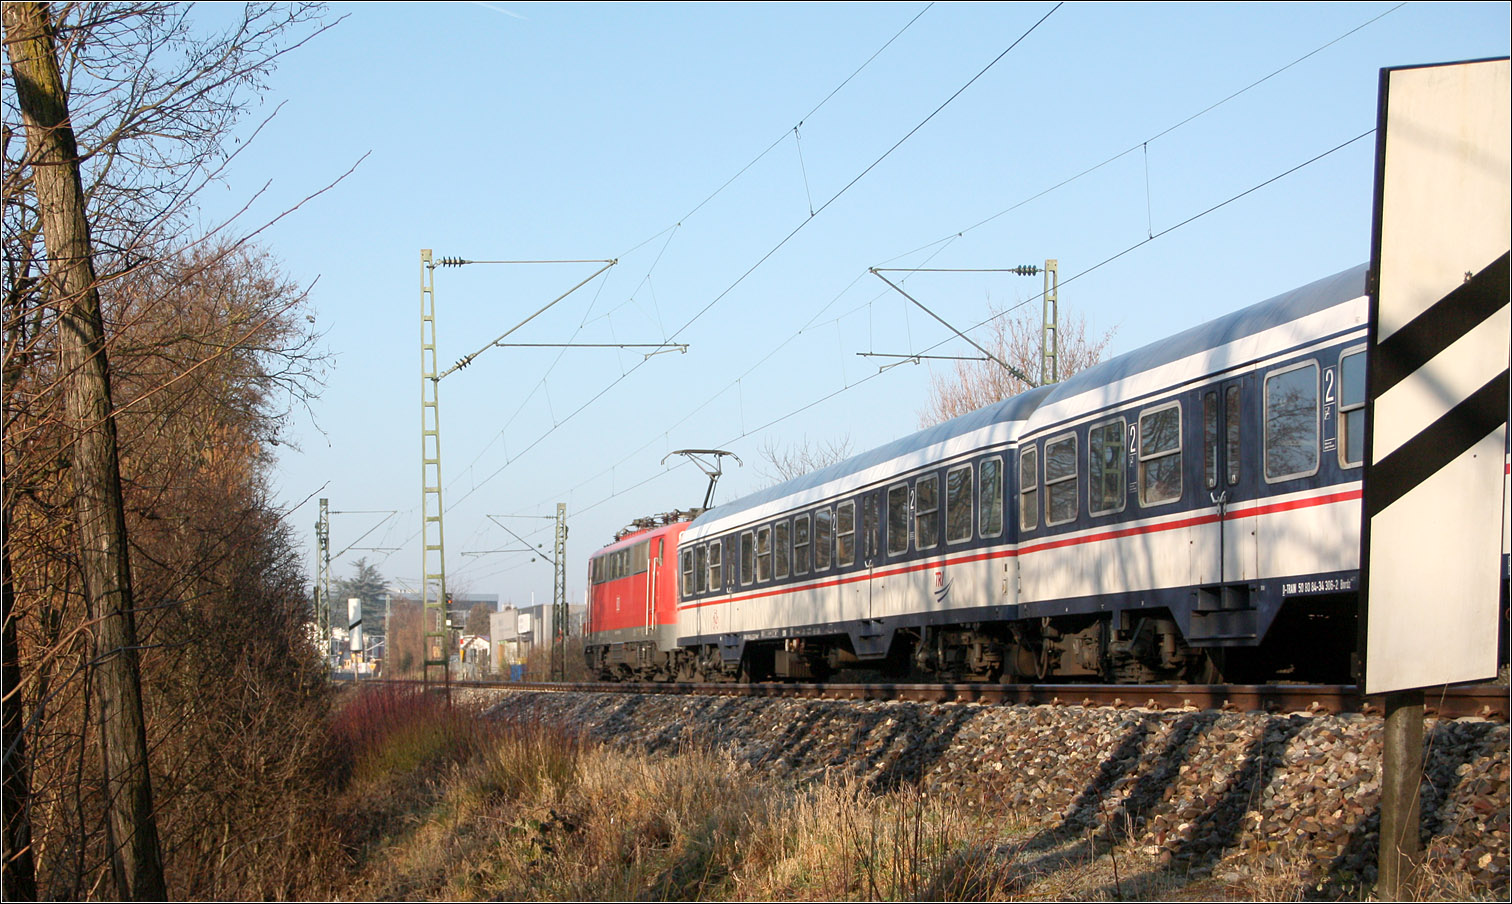 Ersatzzug auf der Remsbahn - 

Da die Flirt-2 Triebwagen so nach und nach auf das ETCS-Kontrol-System umgerüstet werden, werden manche RE-Kurse mit älteres Wagenmaterial gefahren. Hier ein Nachschuss auf einen TRI-Zug gezogen von einer Lok der Baureihe 111.
Eine 111 in S-Bahn-Lackierung kann derzeit auf der Remsbahn auch beobachtet werden.

Kernen-Rommelshausen, 14.02.2023 (M)